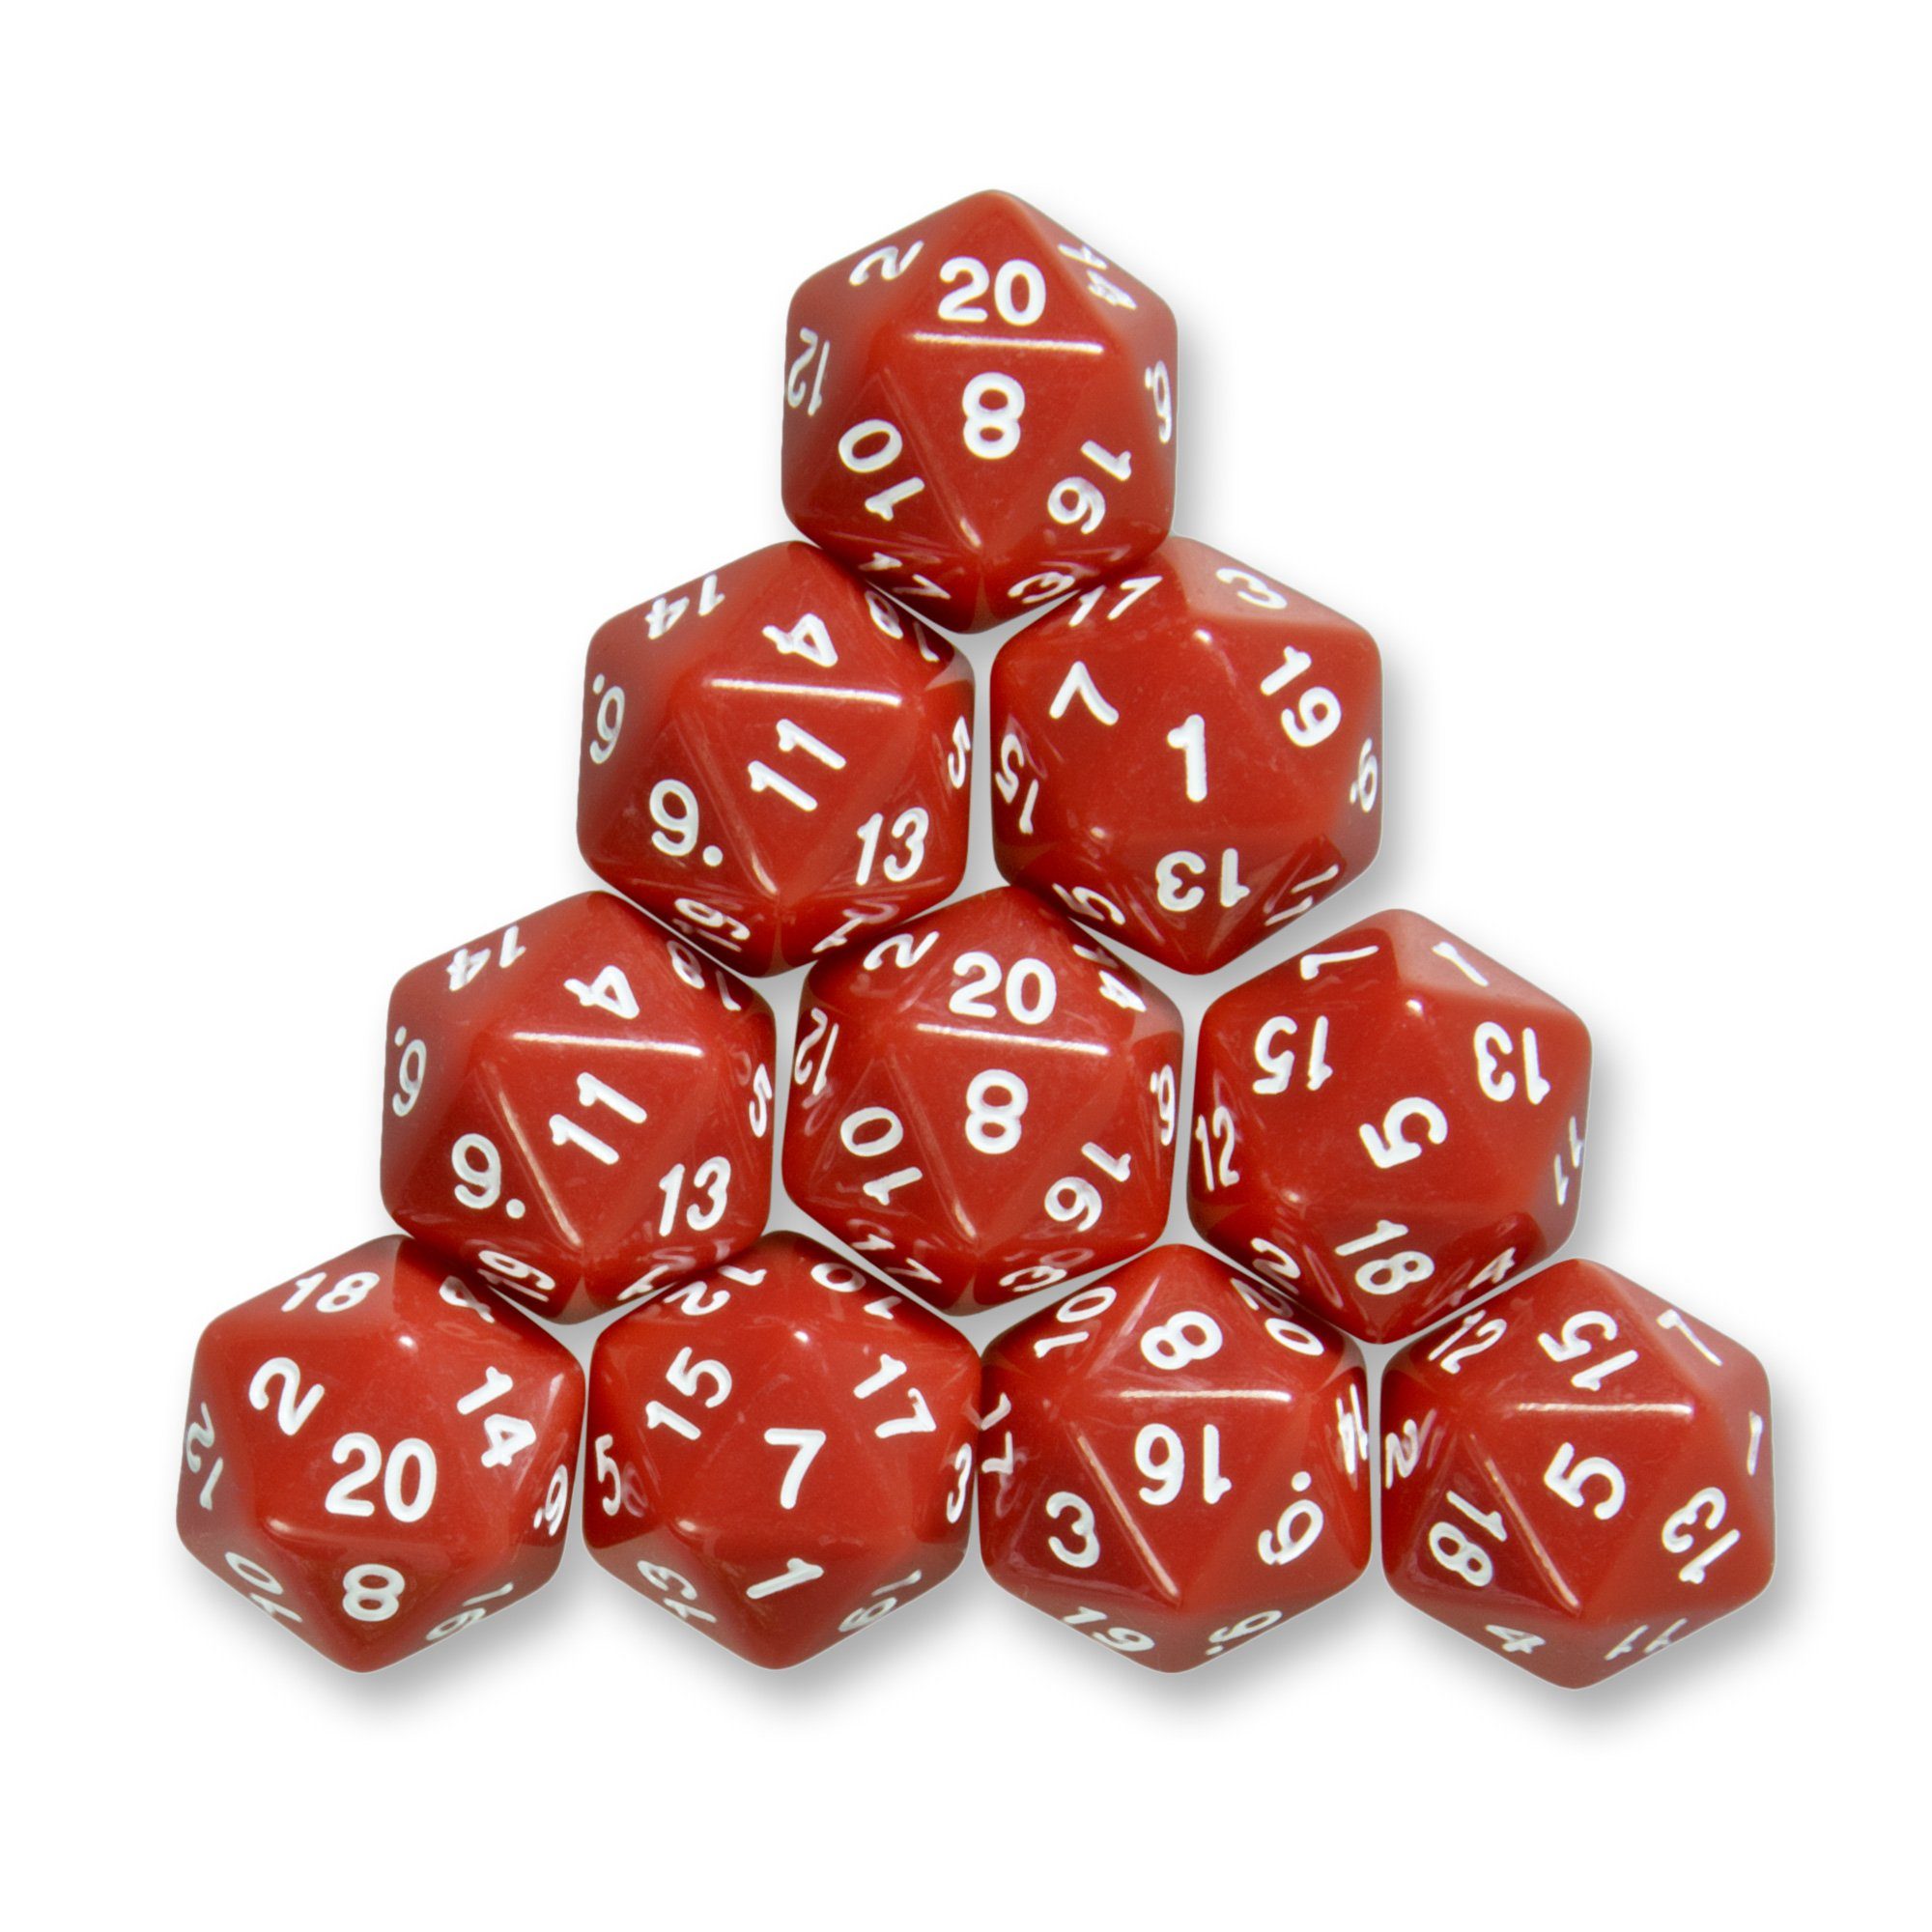 SHIBBY Spielesammlung, 10x polyedrische W20 Würfel für Rollen- und Tabletopspiele Rot